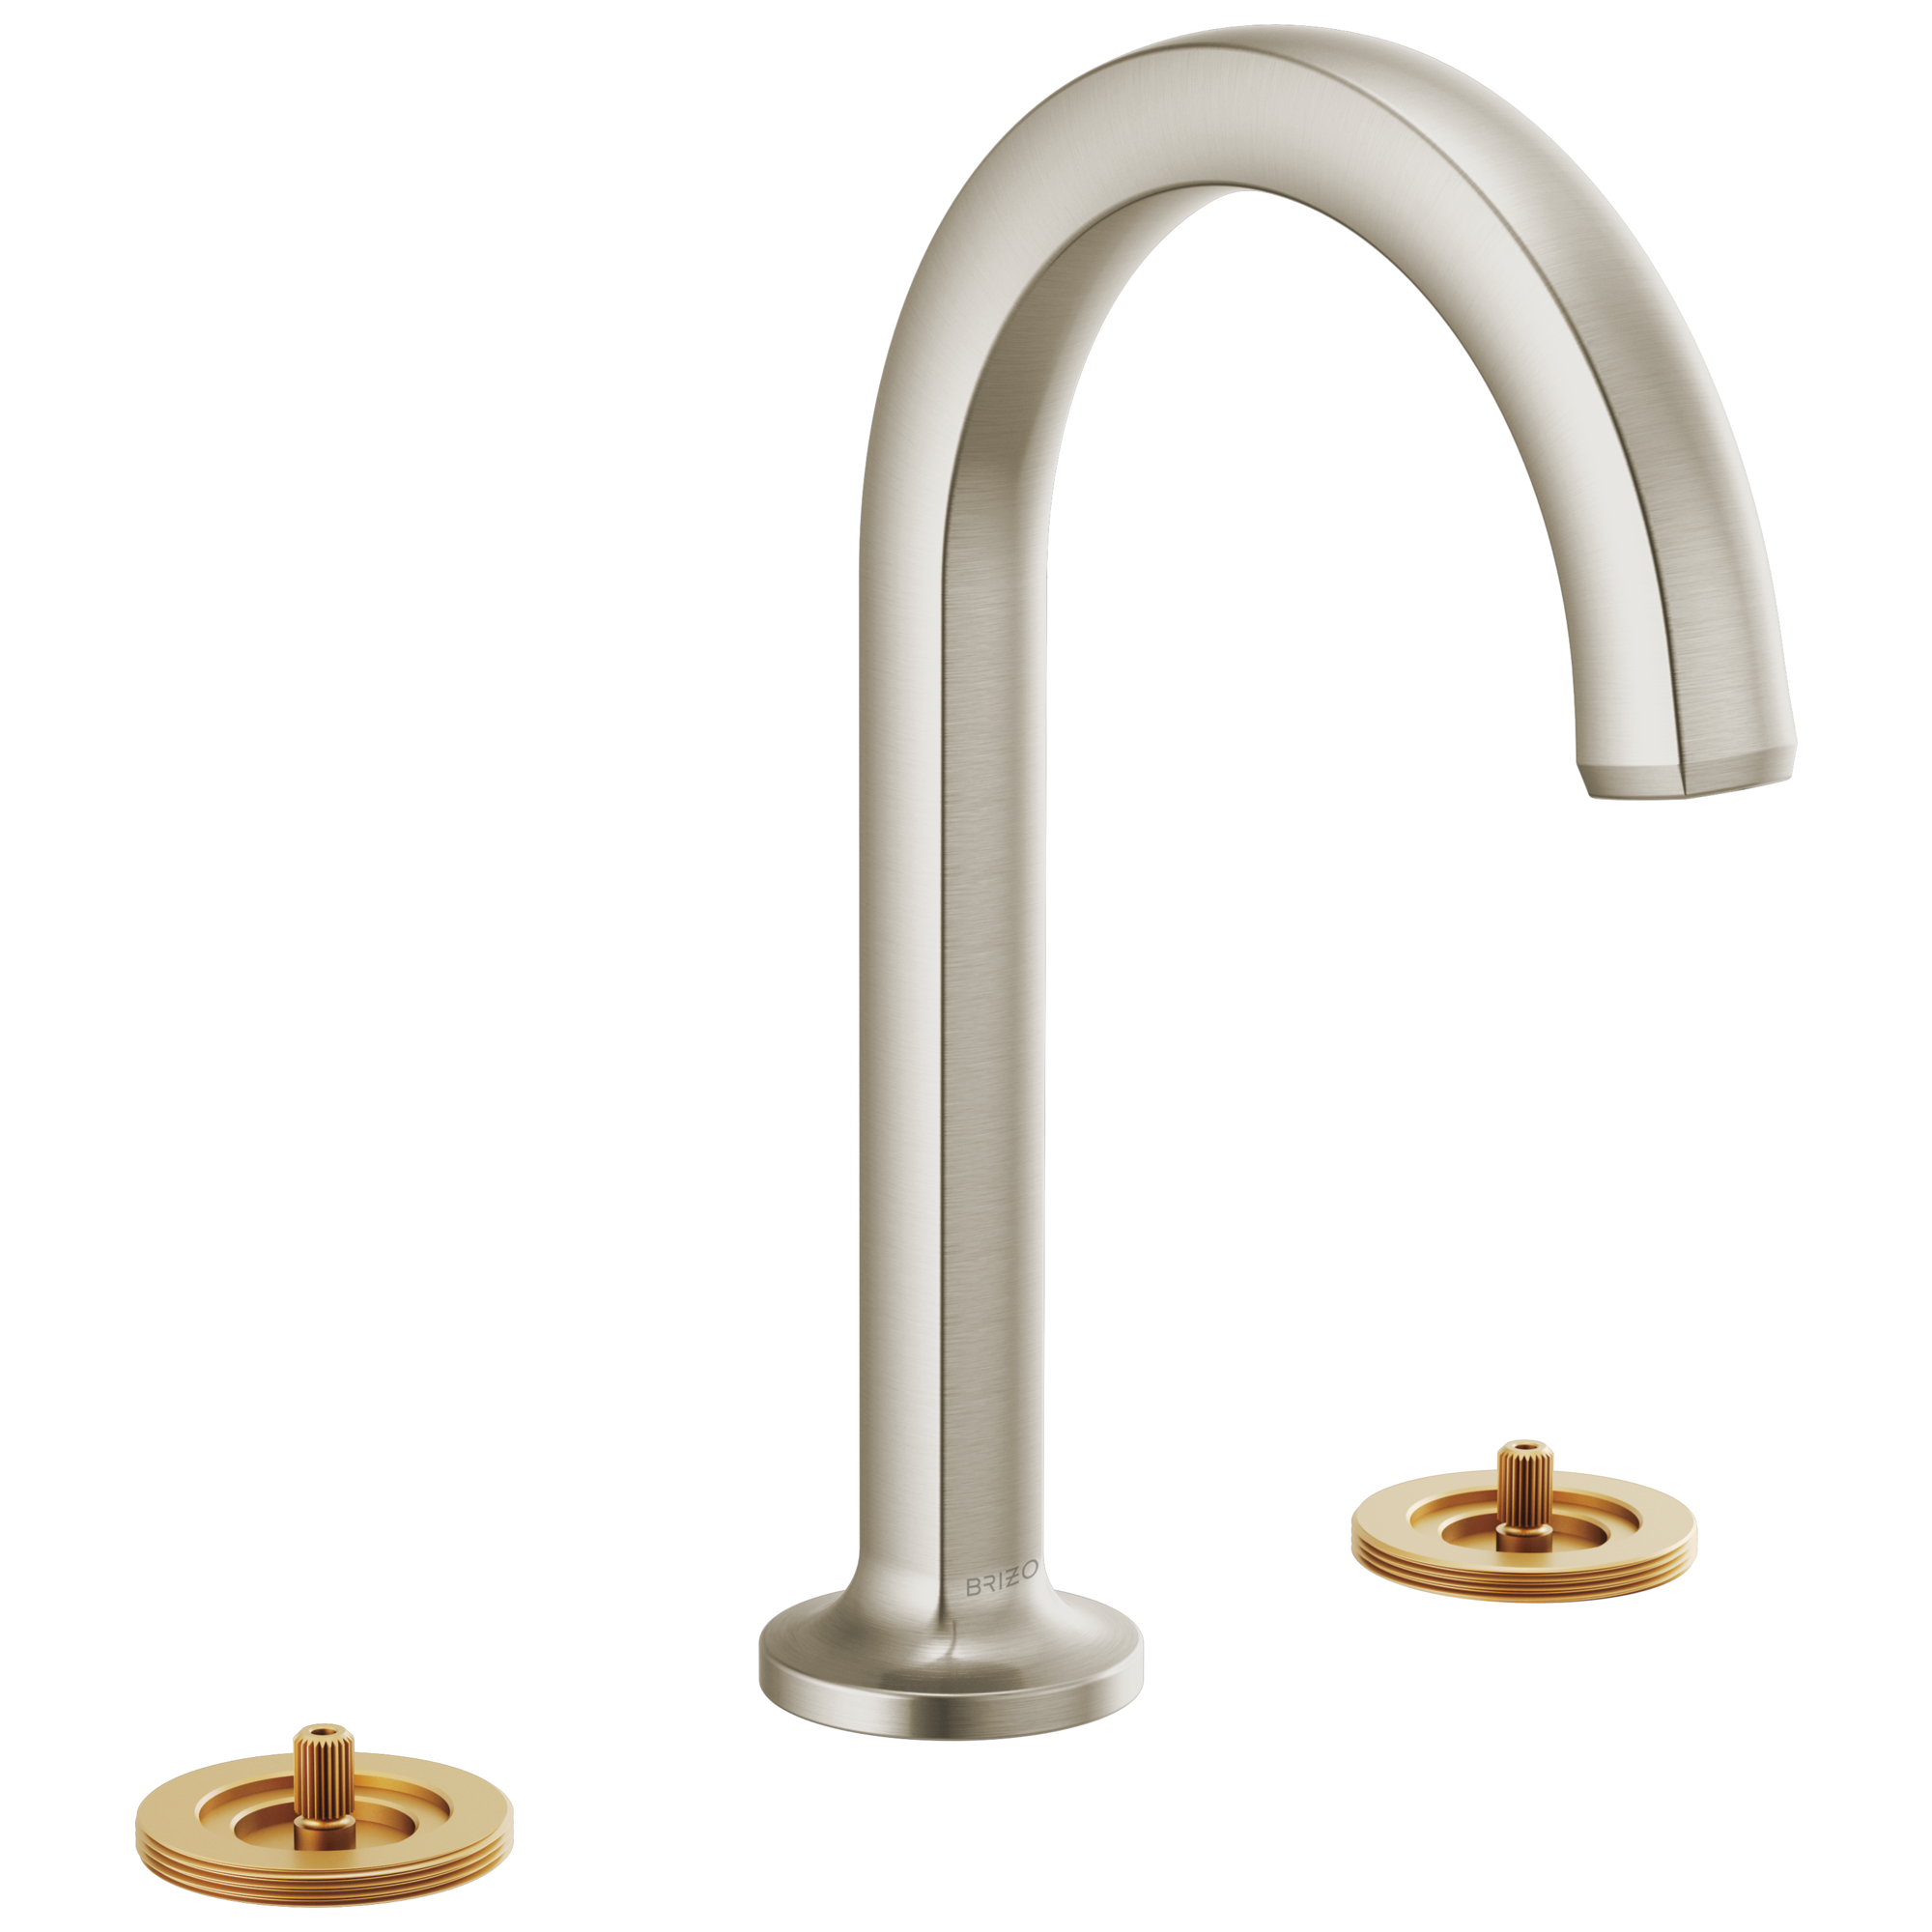 Brizo Kintsu Widespread Lavatory Faucet with Arc Spout - Less Handles 1.5 GPM